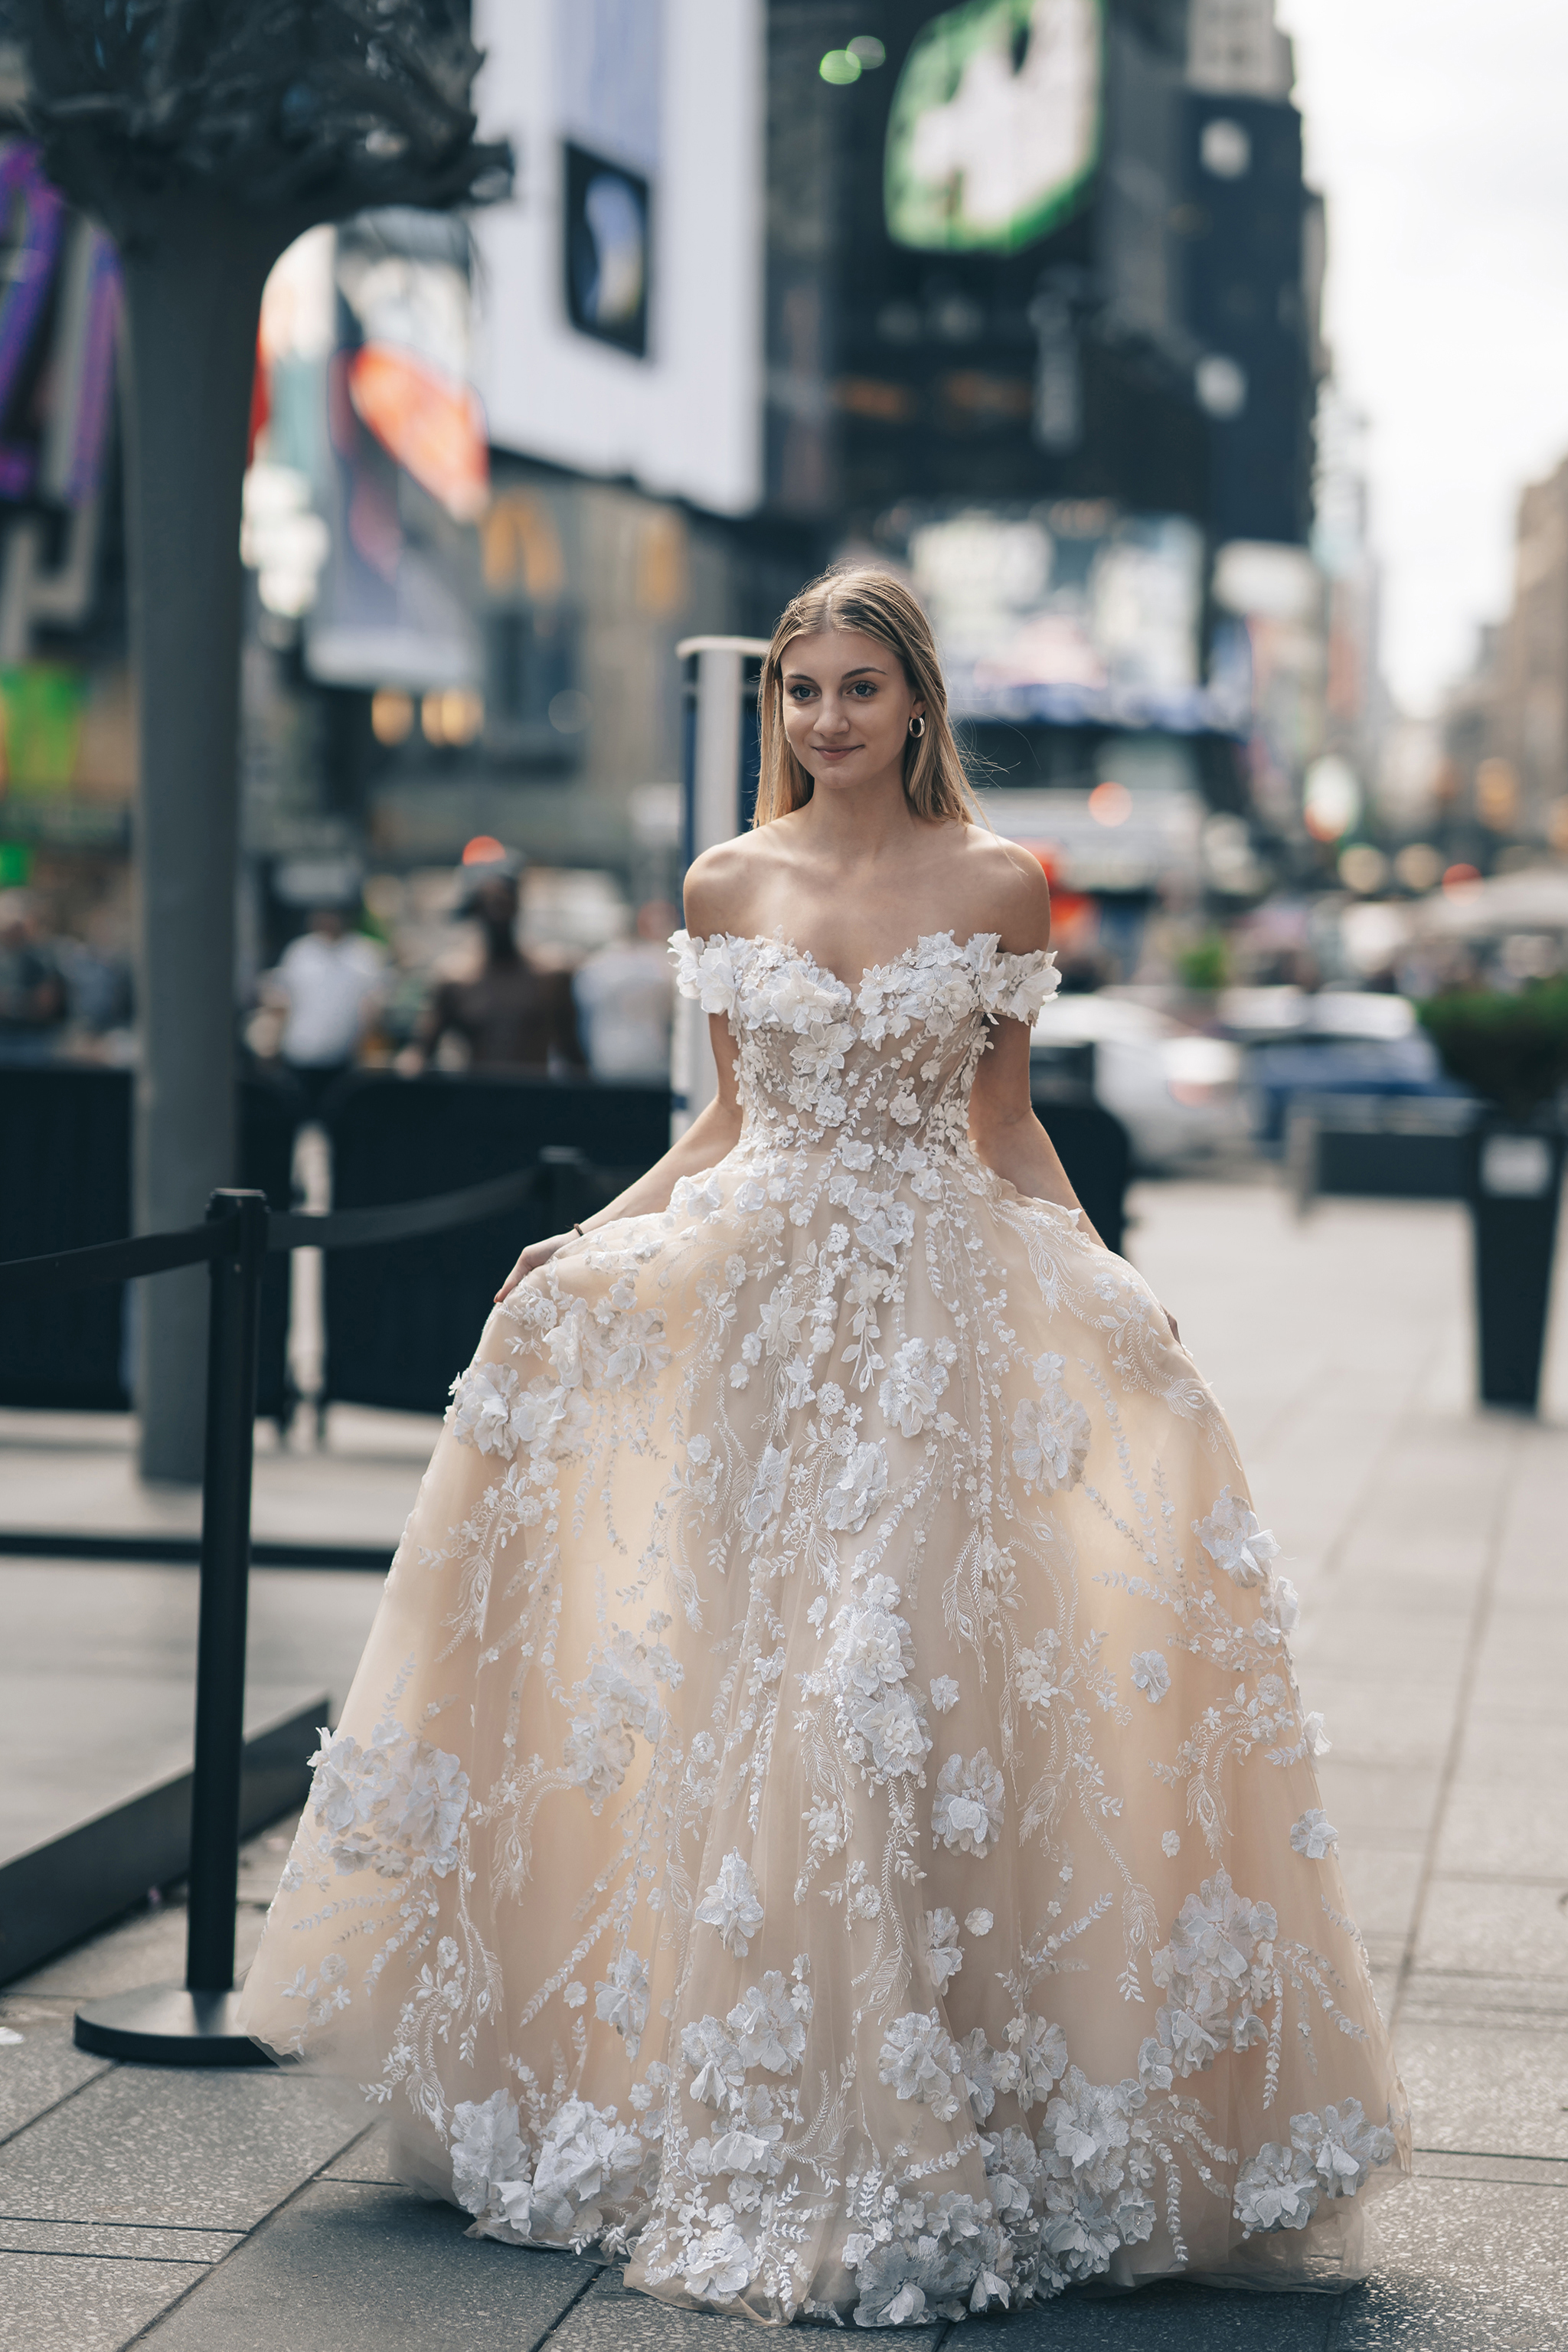 Từ chuyện Tóc Tiên gửi váy cưới sang Mỹ để giặt: Hóa ra có dịch vụ